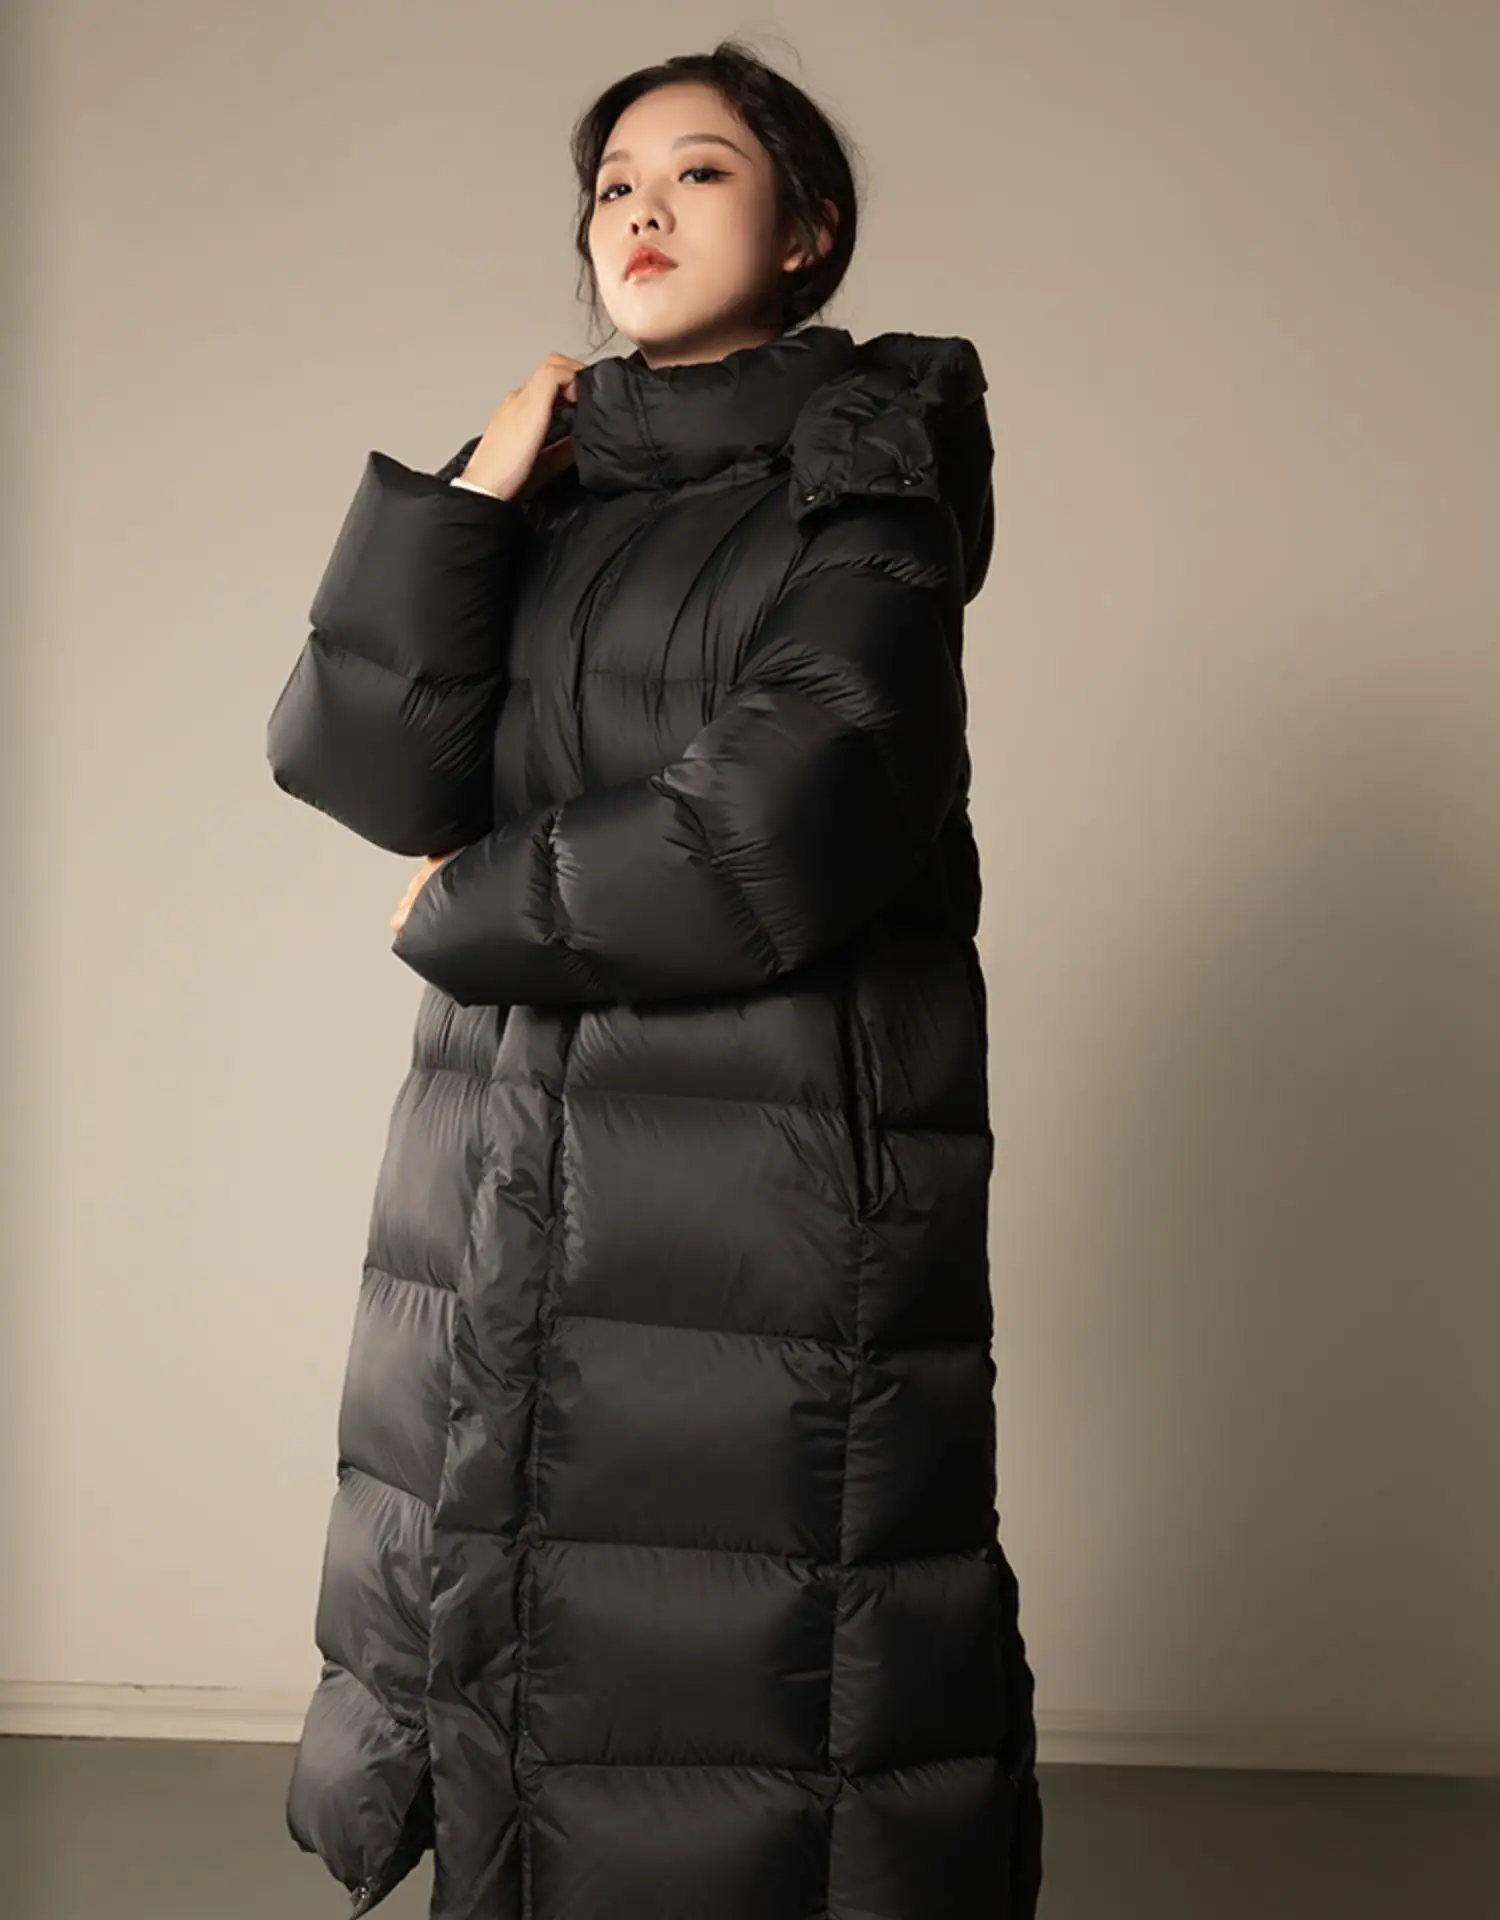 Doudoune Longue Femme Women Winter Coats Long Style Long Maxi Puffy Down Padded Coats Women